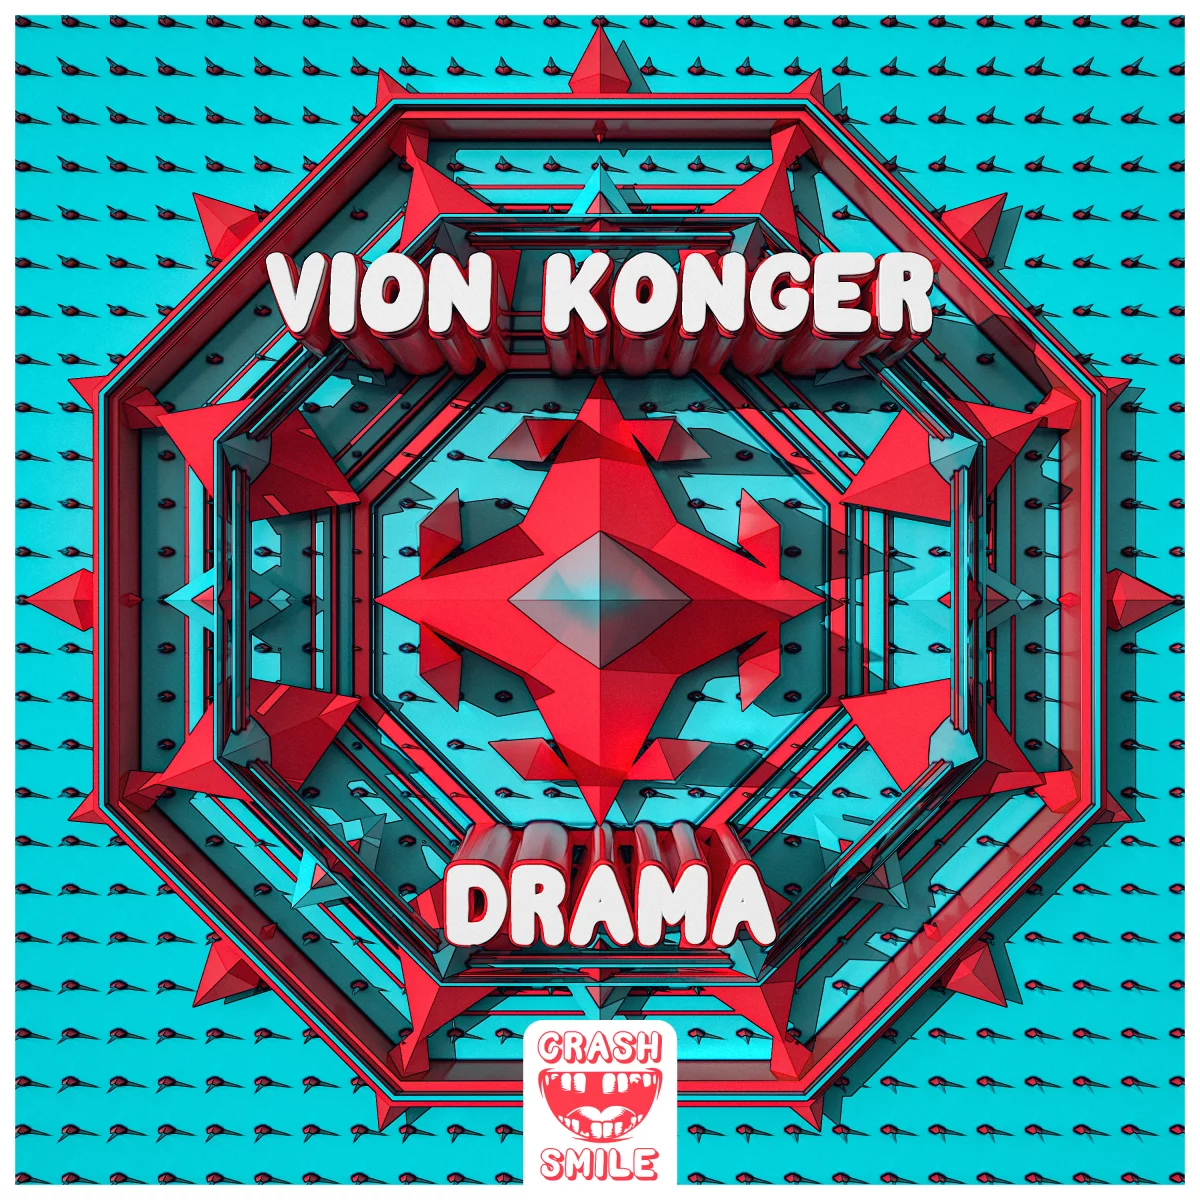 Drama - Vion Konger⁠